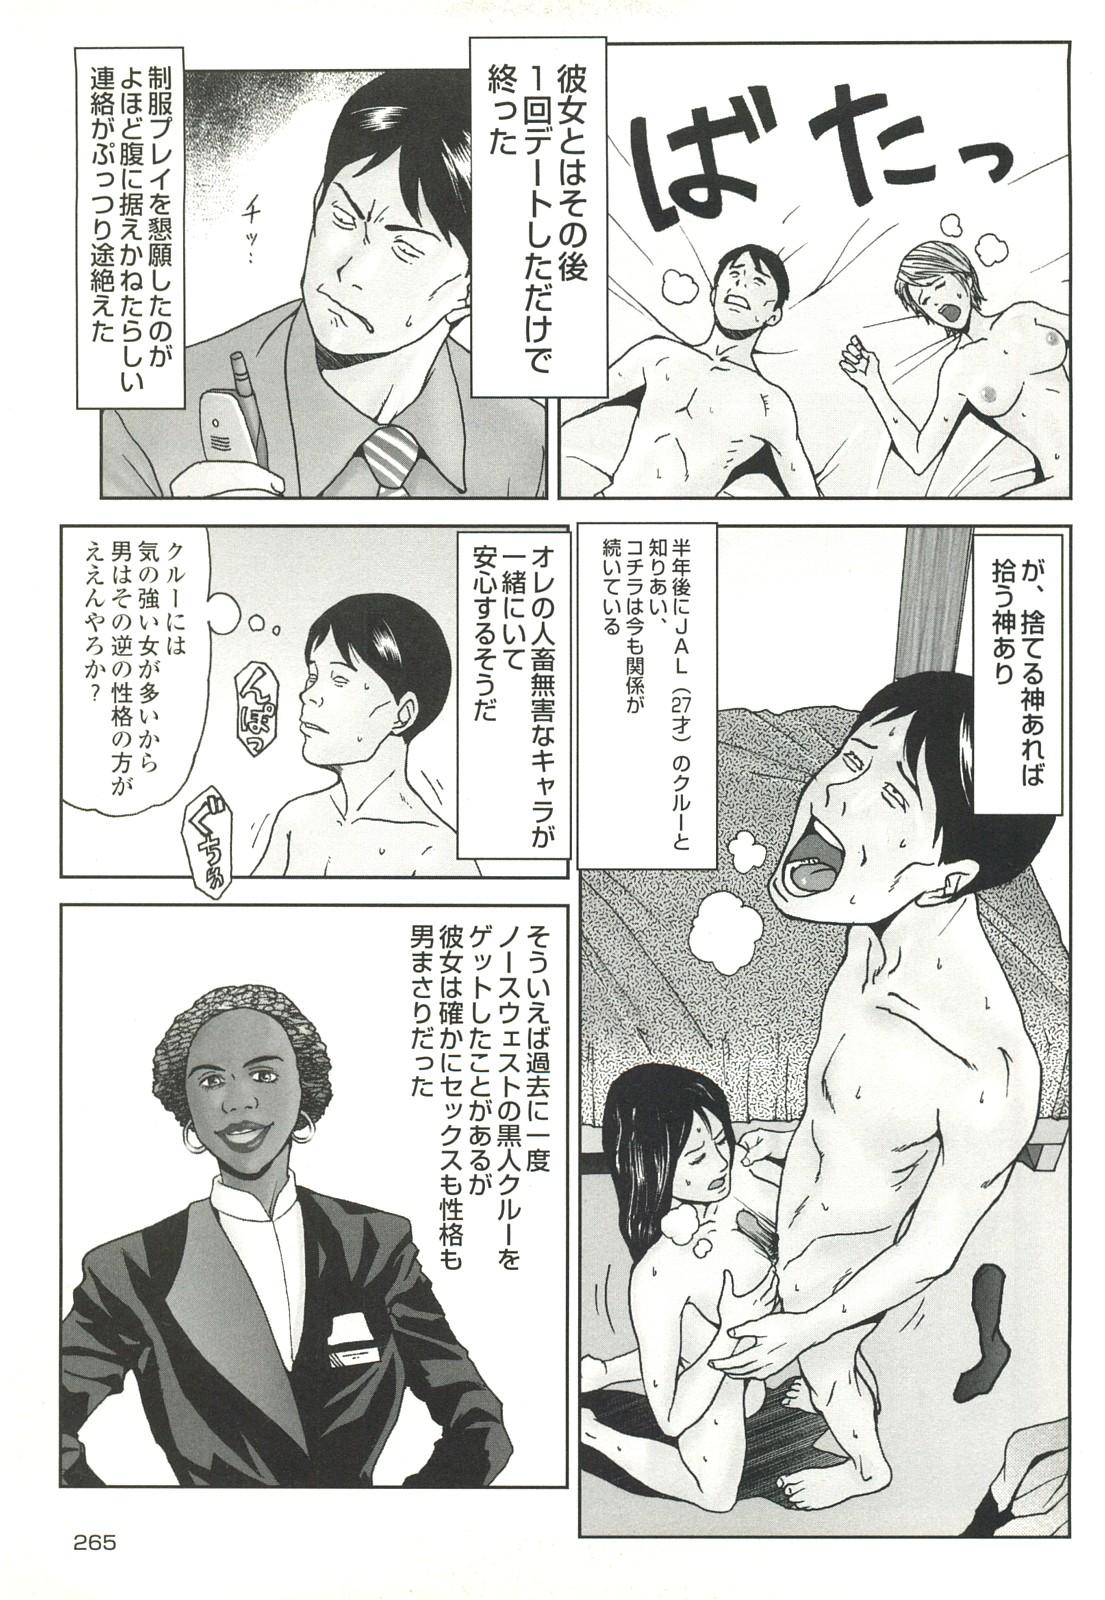 コミック裏モノJAPAN Vol.18 今井のりたつスペシャル号 264